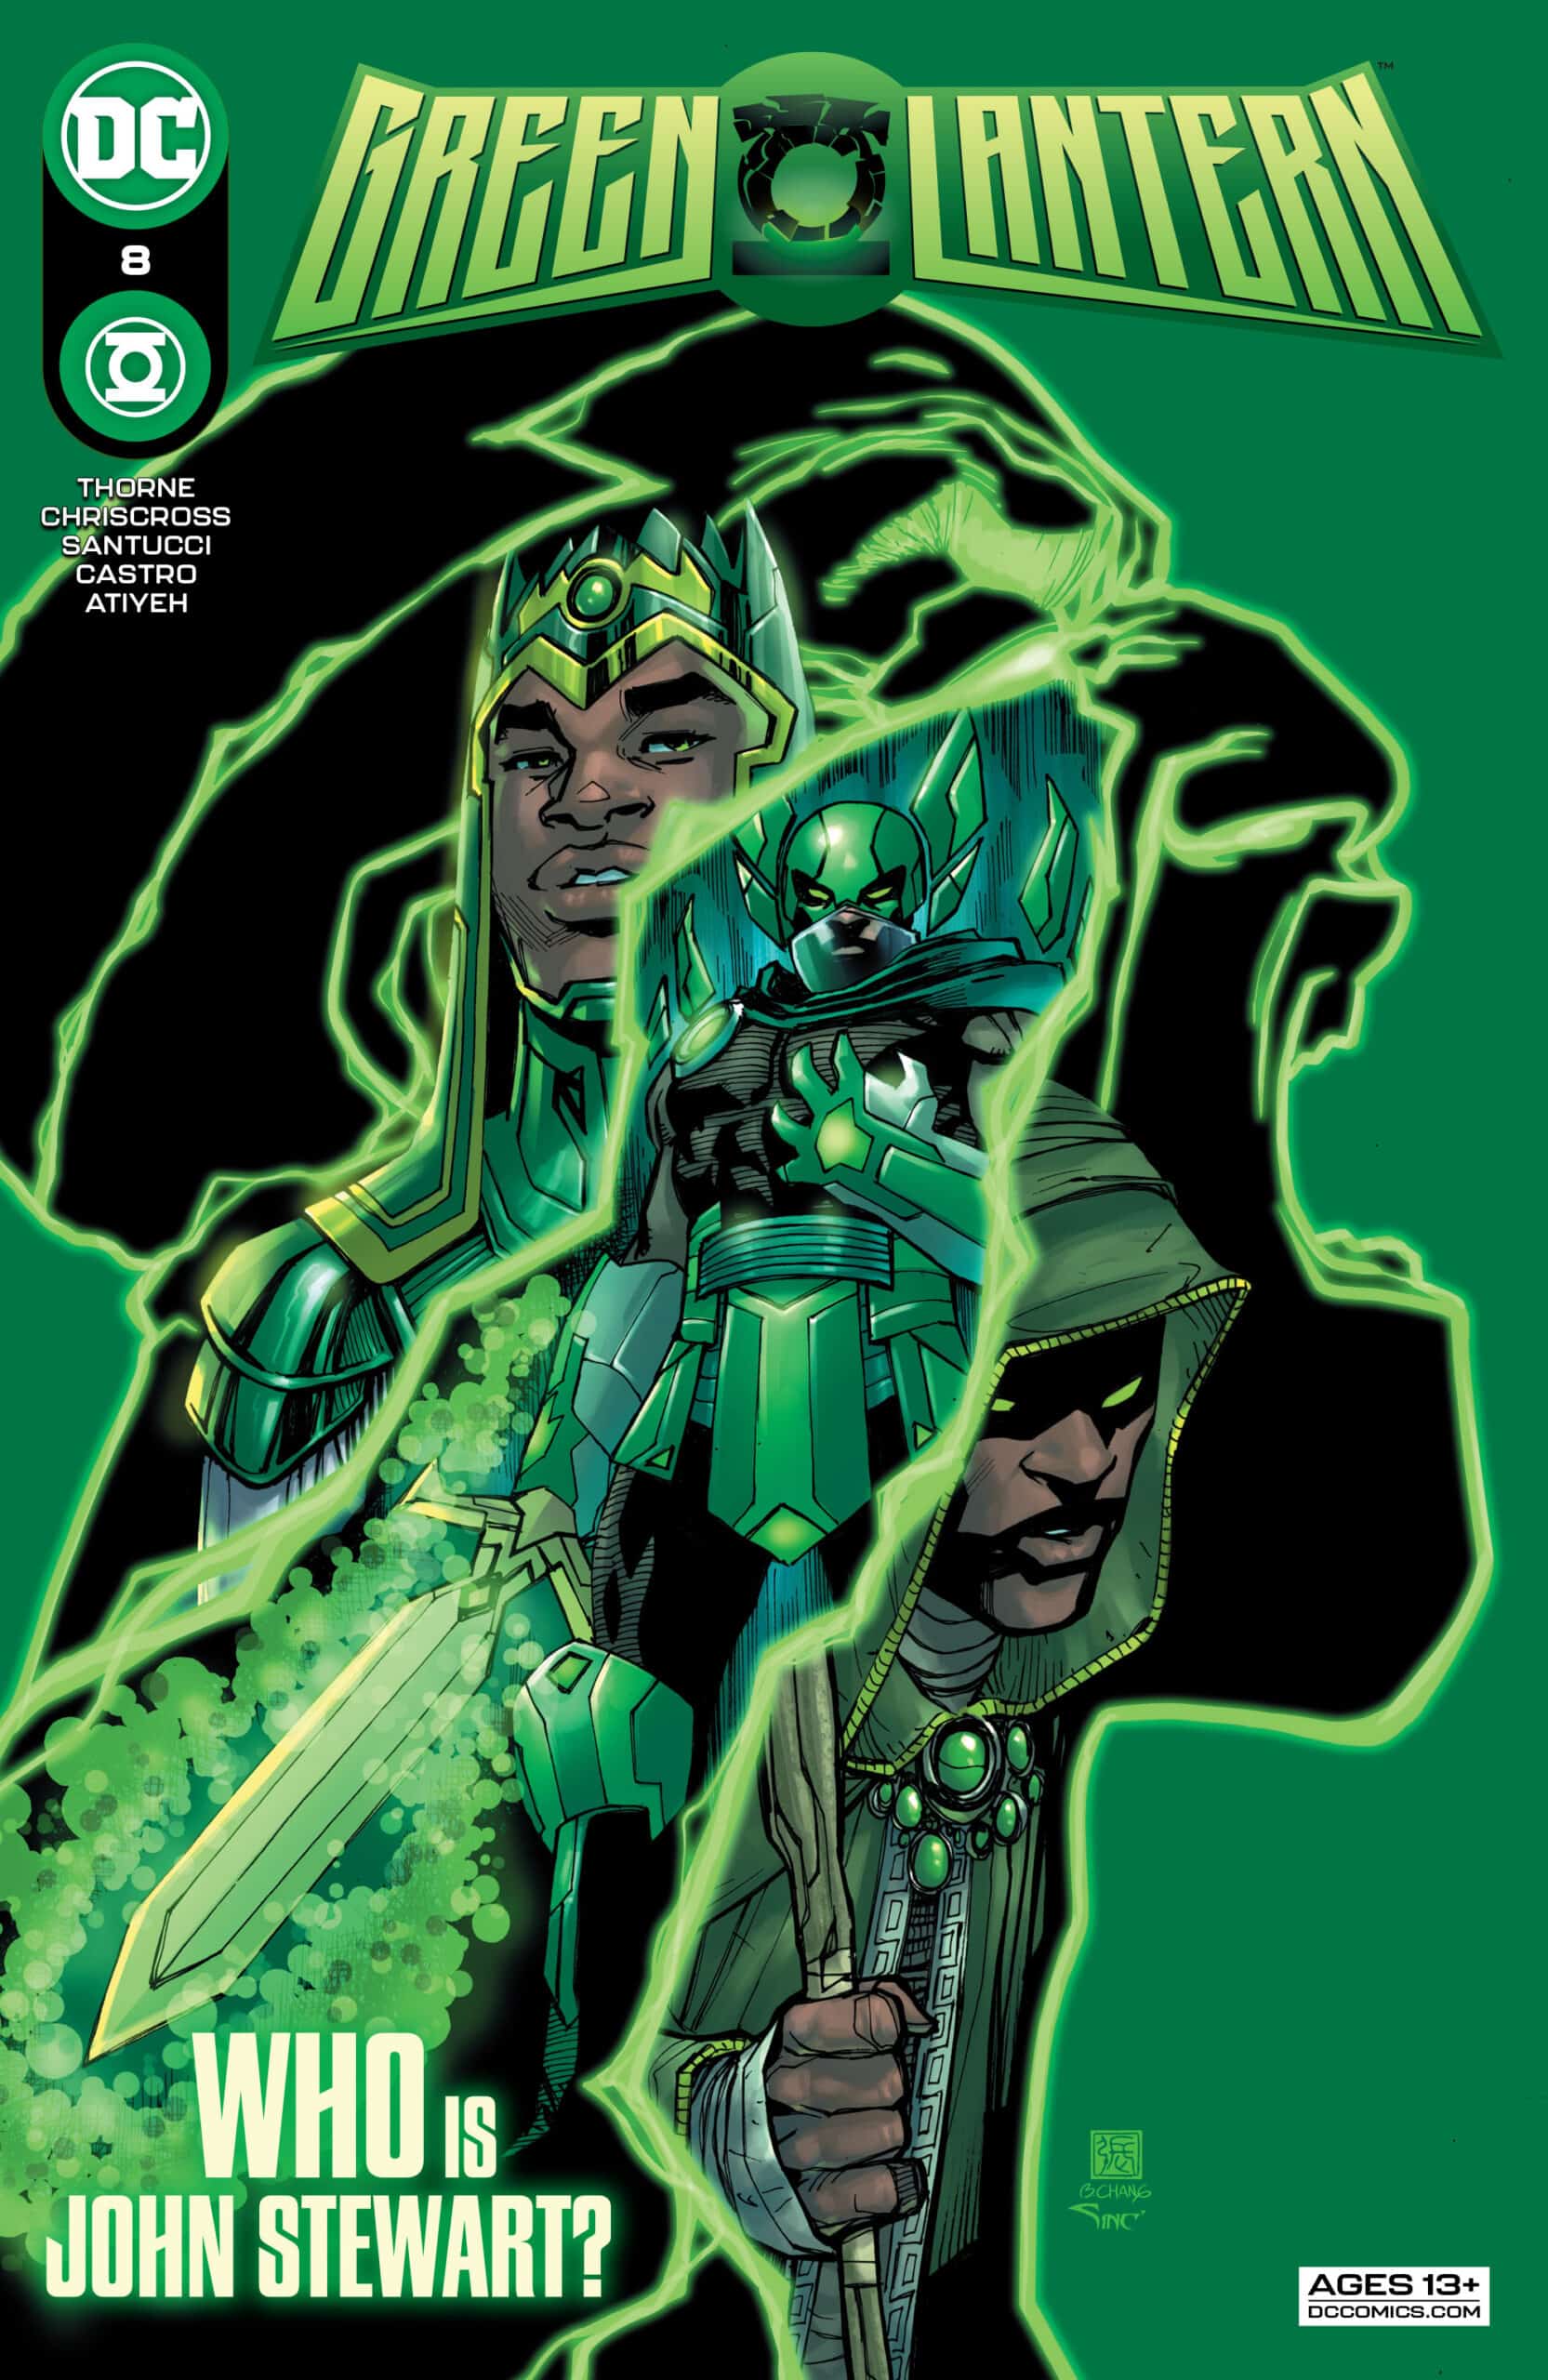 SNEAK PEEK: Preview of DC Comics' GREEN LANTERN #8 (On Sale 11/16 